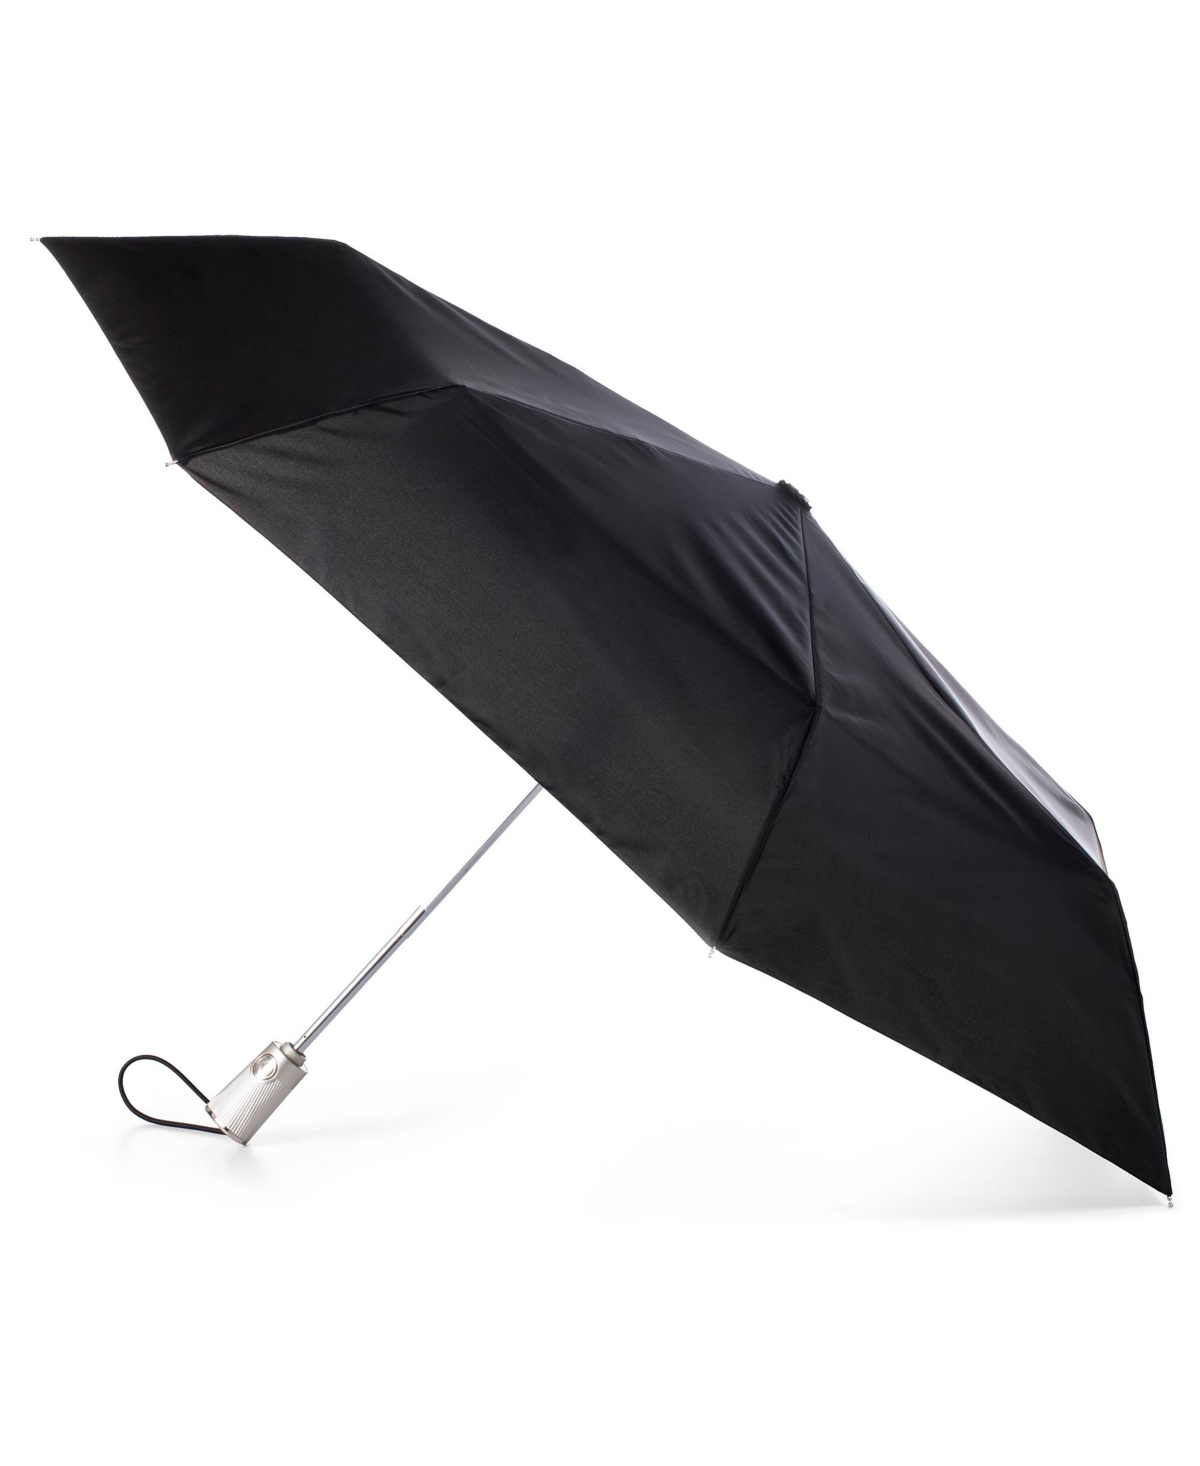 Water Repellent Auto Open Close Folding Umbrella with Sunguard - Black